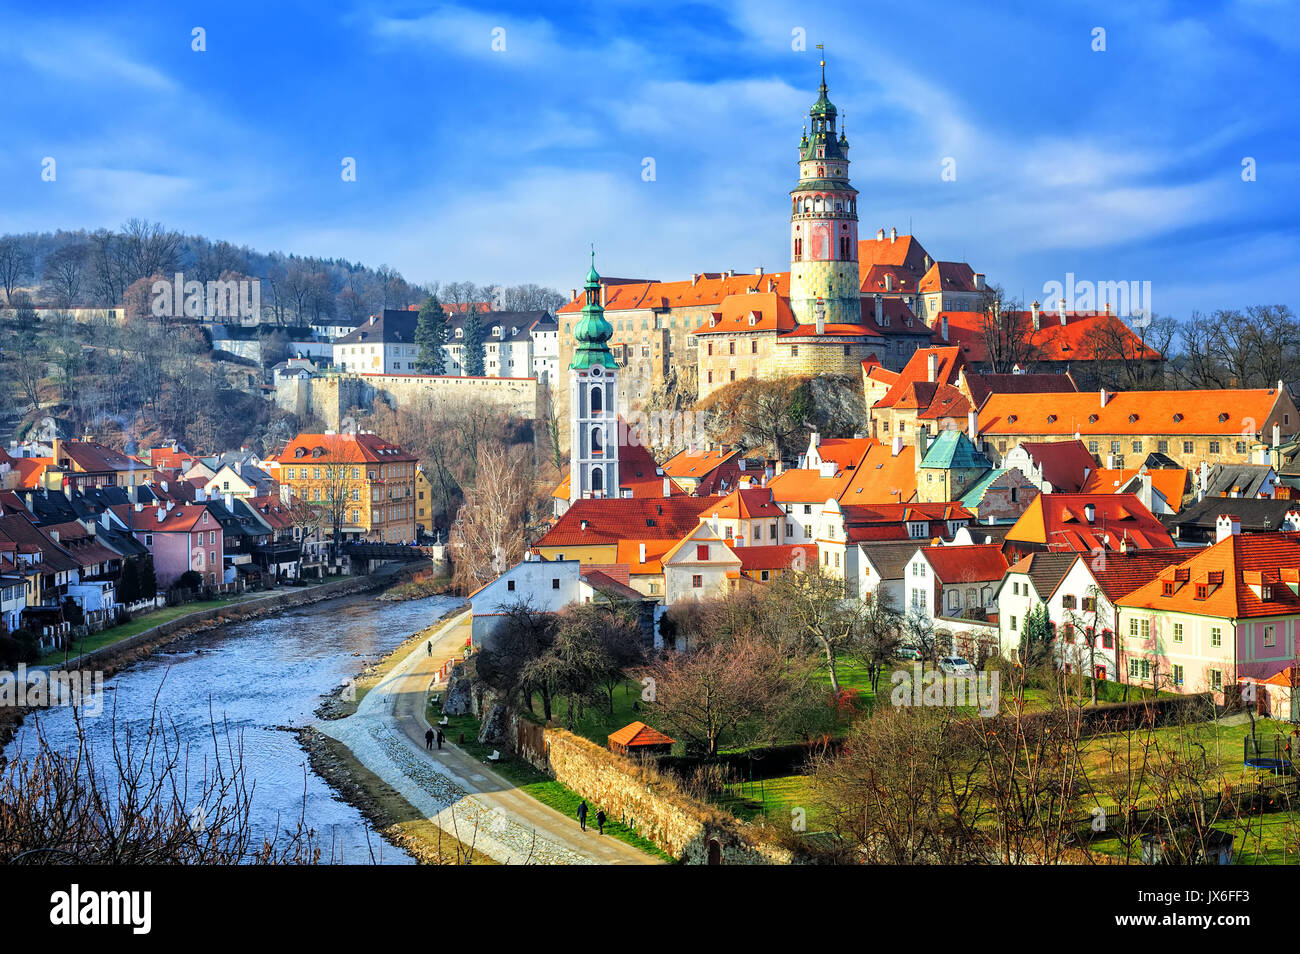 Toits de tuiles rouges et les tours de la vieille ville 89281 Crumlov, République Tchèque Banque D'Images